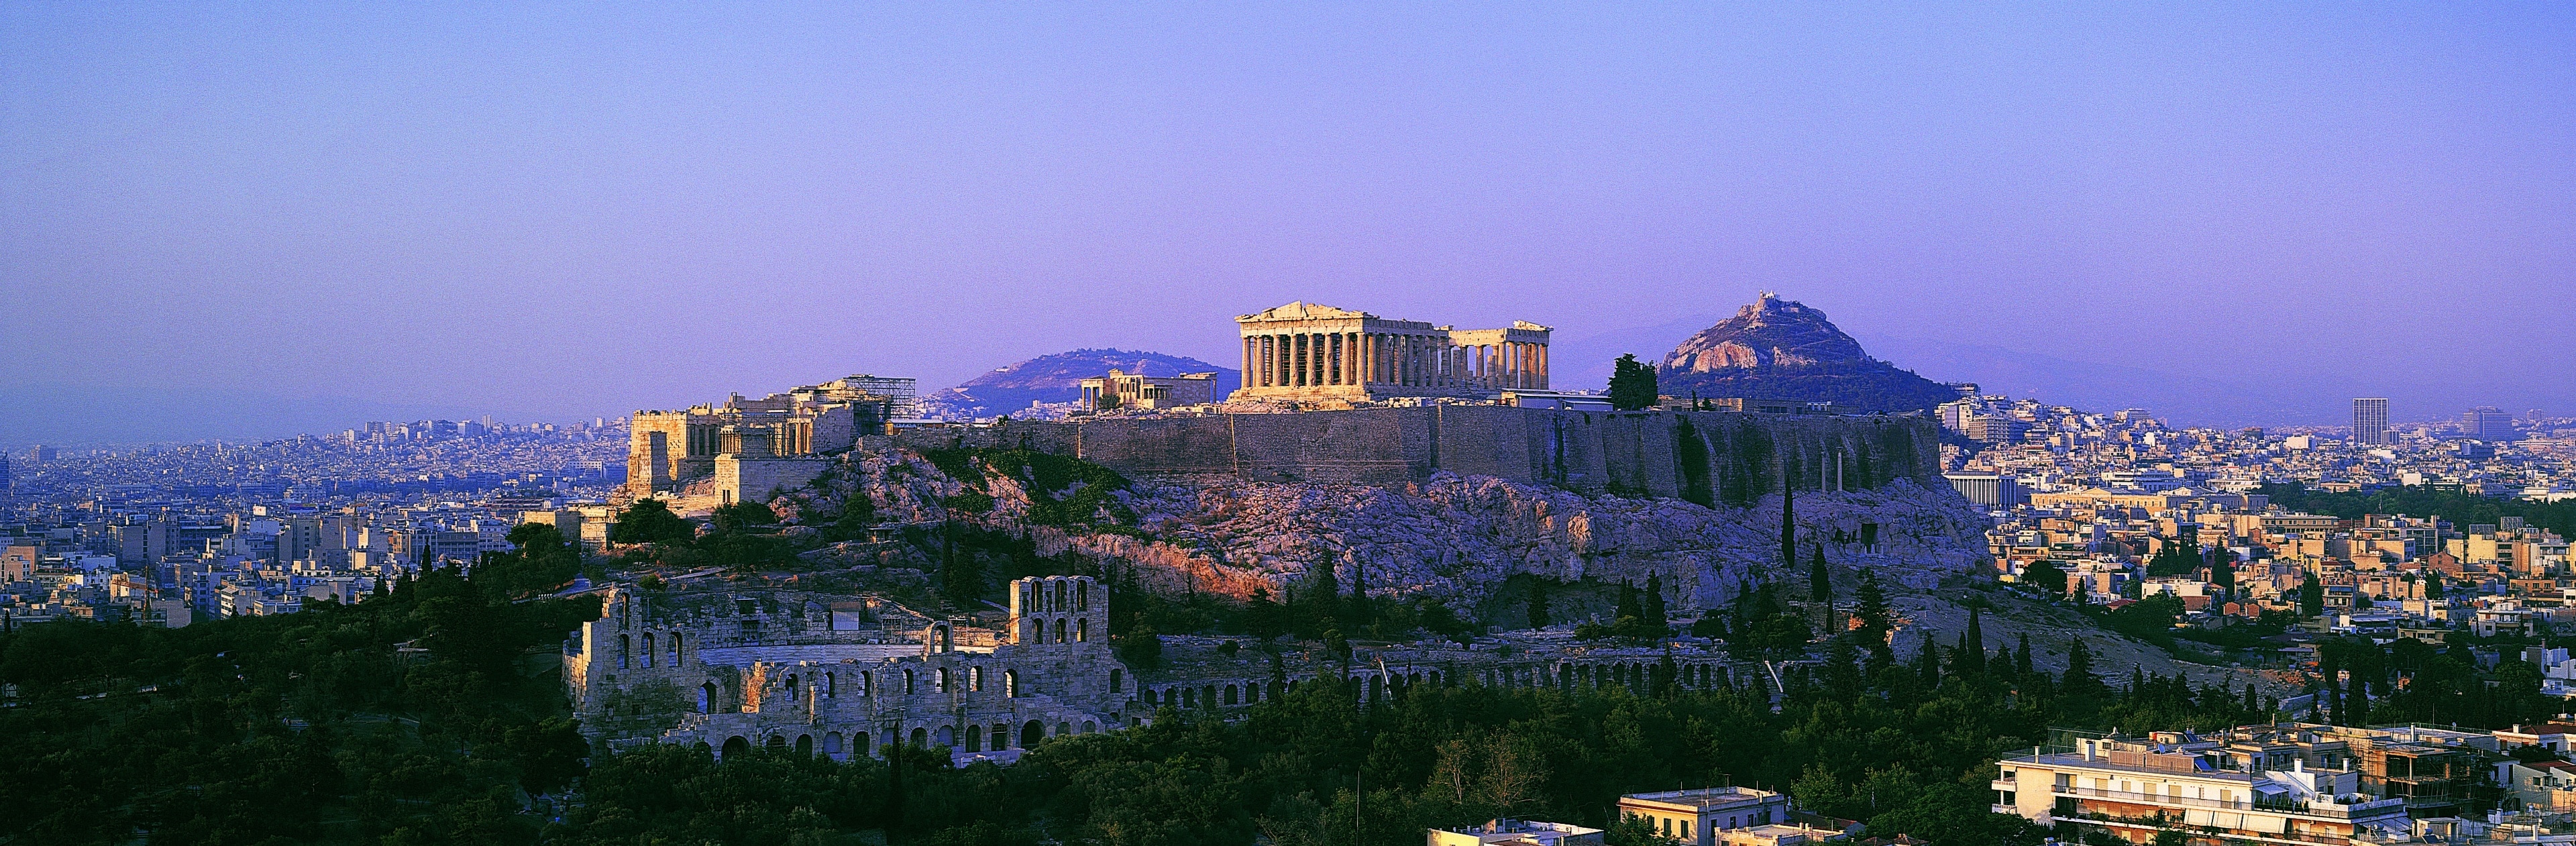 Entdecken Sie die Mythen des ältesten dorischen Tempels in Griechenland, der ursprünglich der Kriegsgöttin Athene gewidmet wurde.